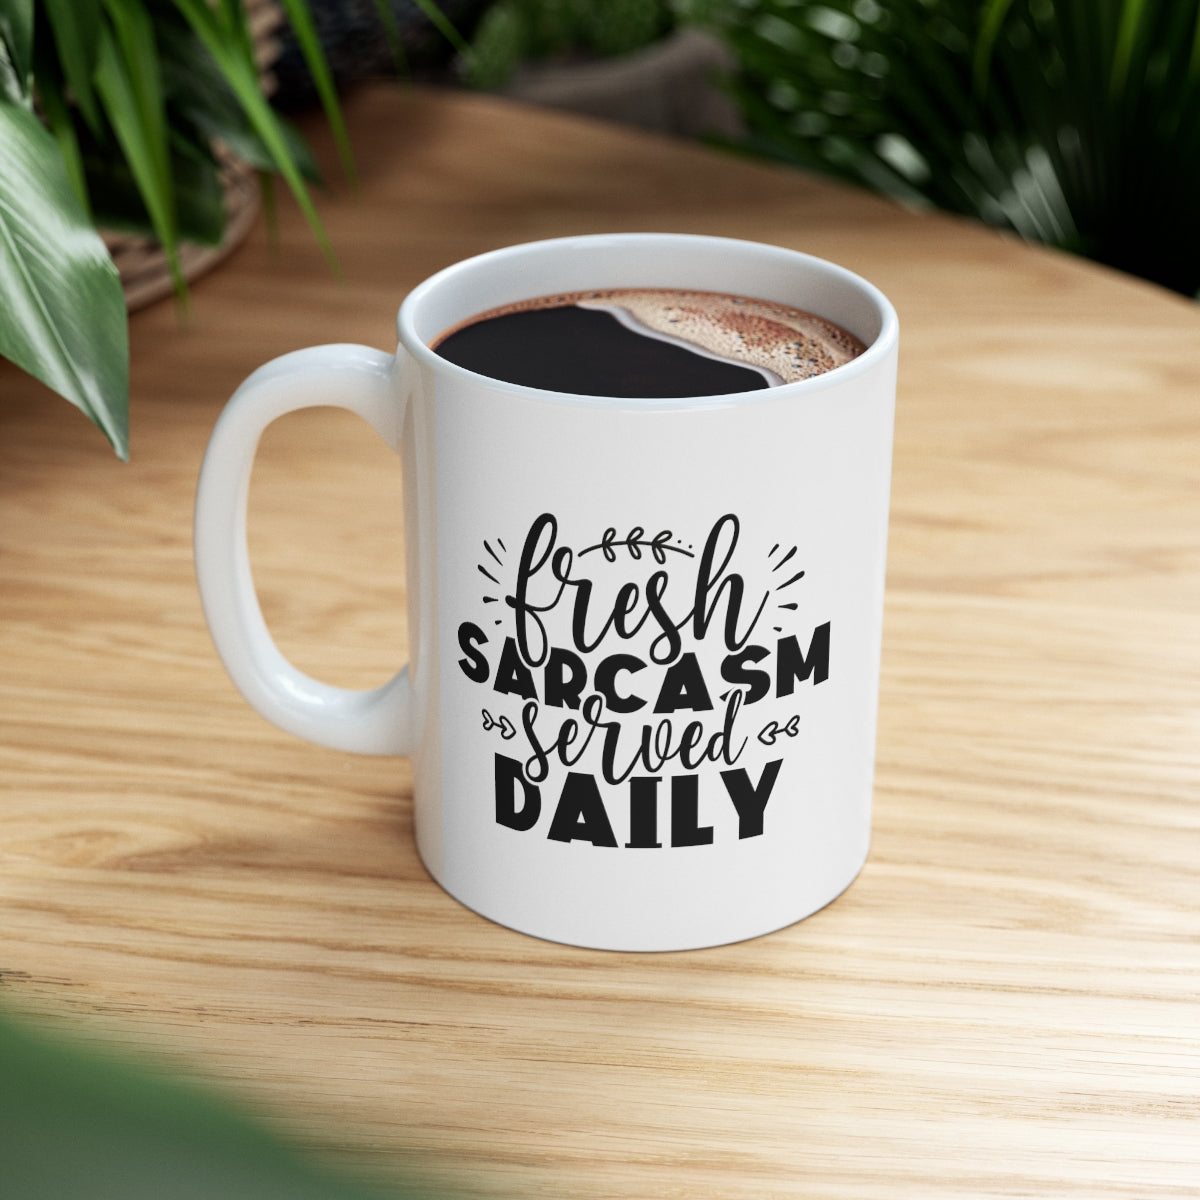 Fresh Sarcasm Served Daily Ceramic Mug